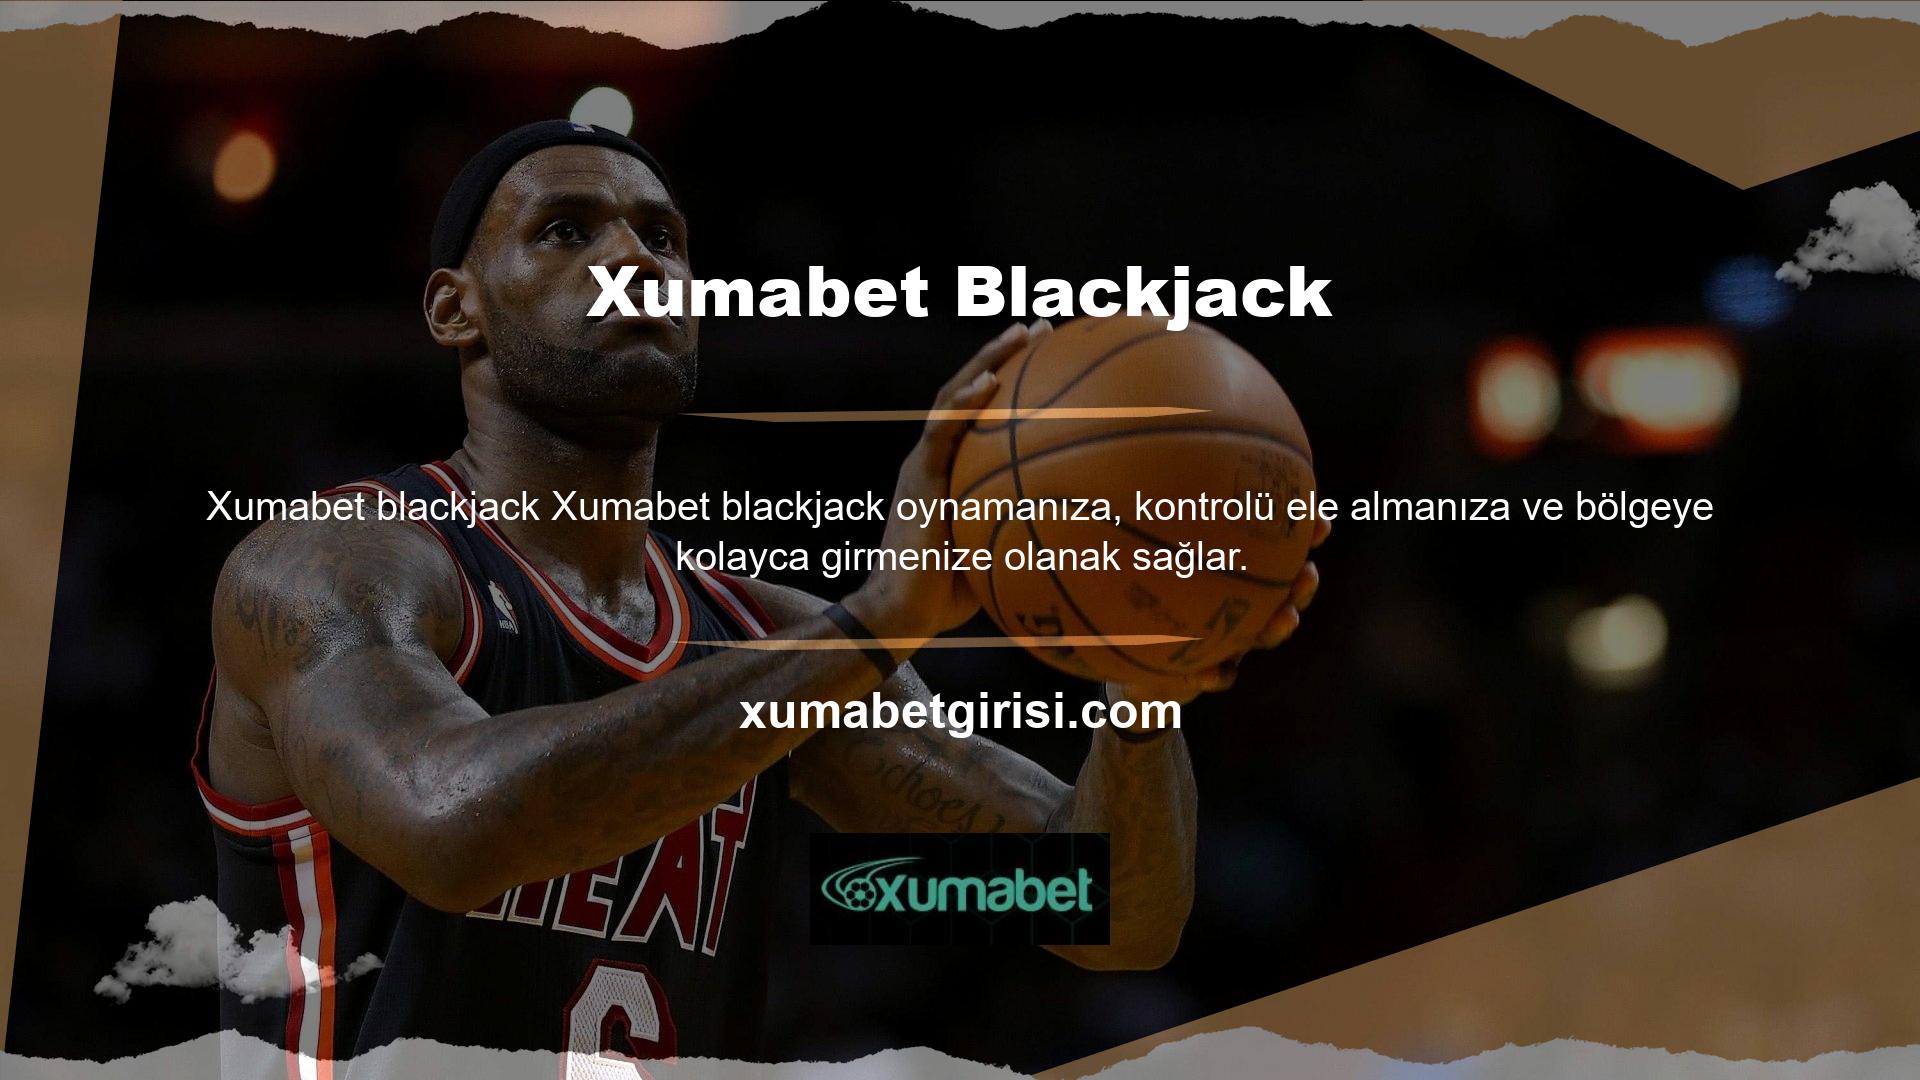 Xumabet adresi son yılların en aktif sitelerinden biri haline geldi